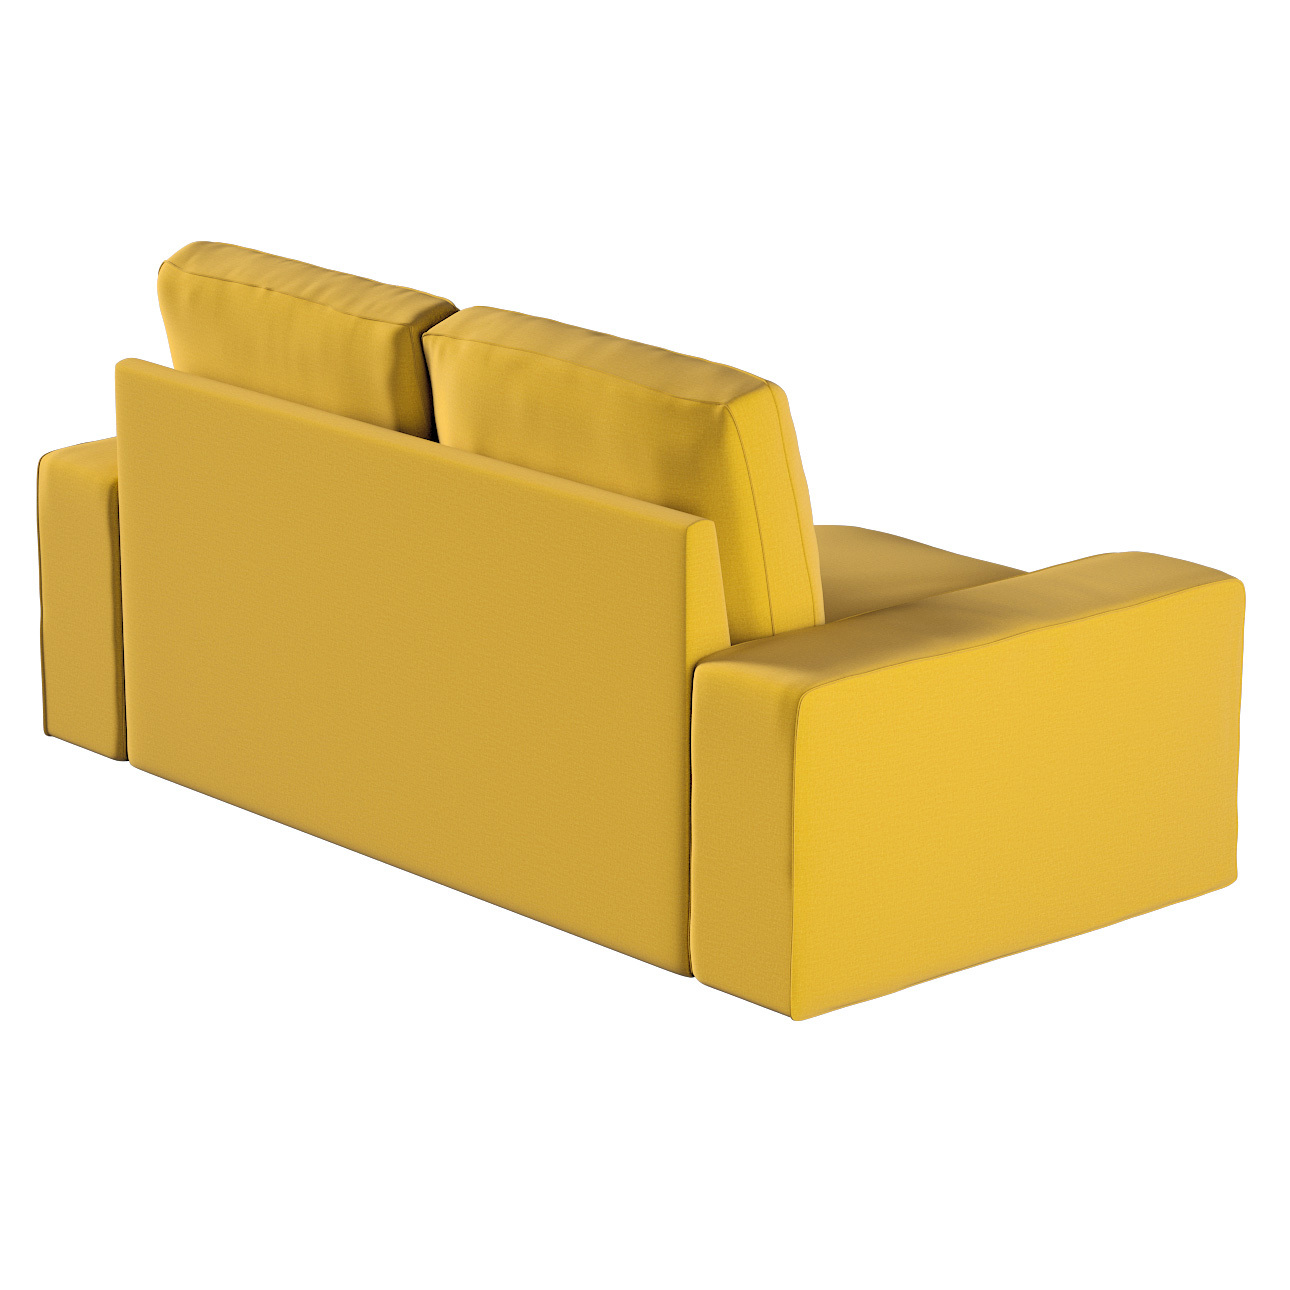 Bezug für Kivik 2-Sitzer Sofa, honiggelb, Bezug für Sofa Kivik 2-Sitzer, In günstig online kaufen